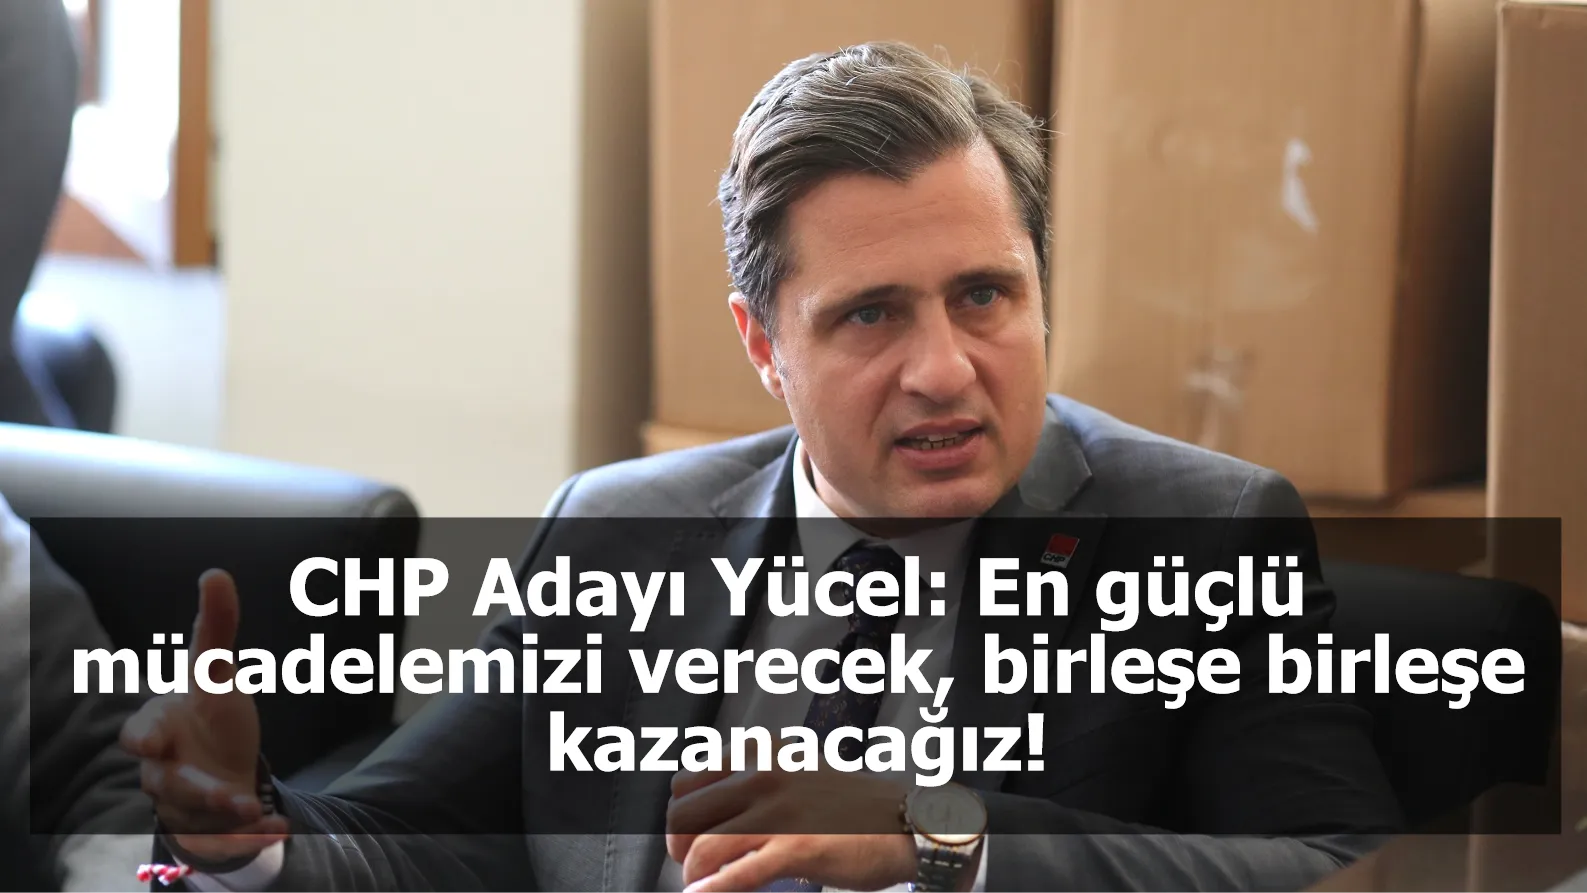 CHP Adayı Yücel: En güçlü mücadelemizi verecek, birleşe birleşe kazanacağız!